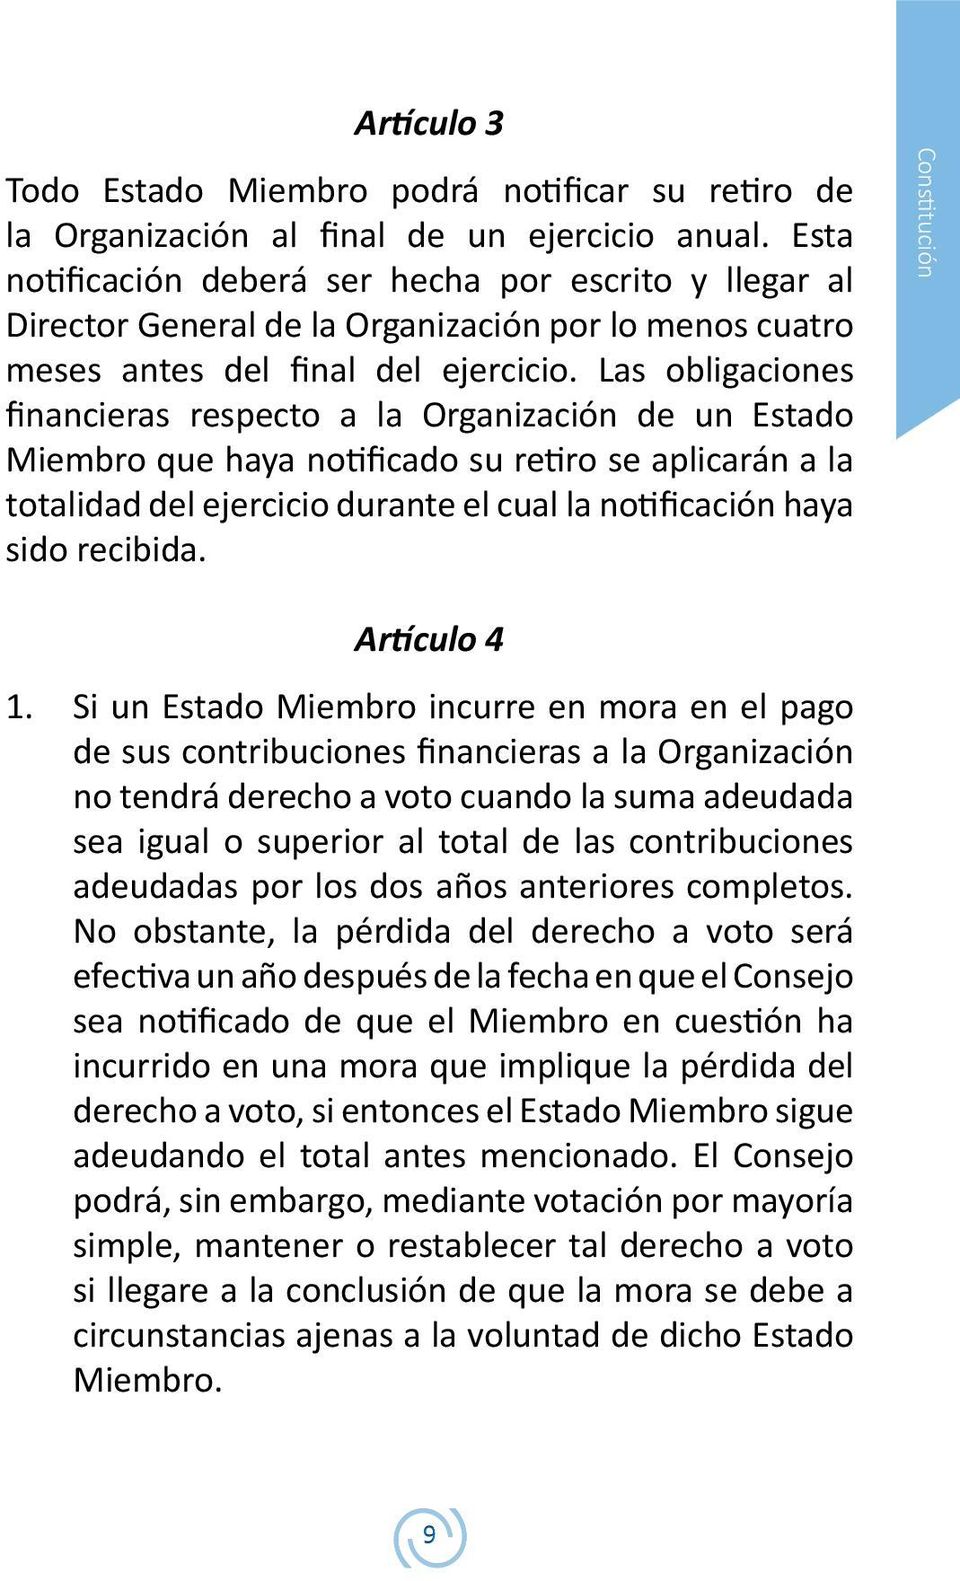 Las obligaciones financieras respecto a la Organización de un Estado Miembro que haya notificado su retiro se aplicarán a la totalidad del ejercicio durante el cual la notificación haya sido recibida.